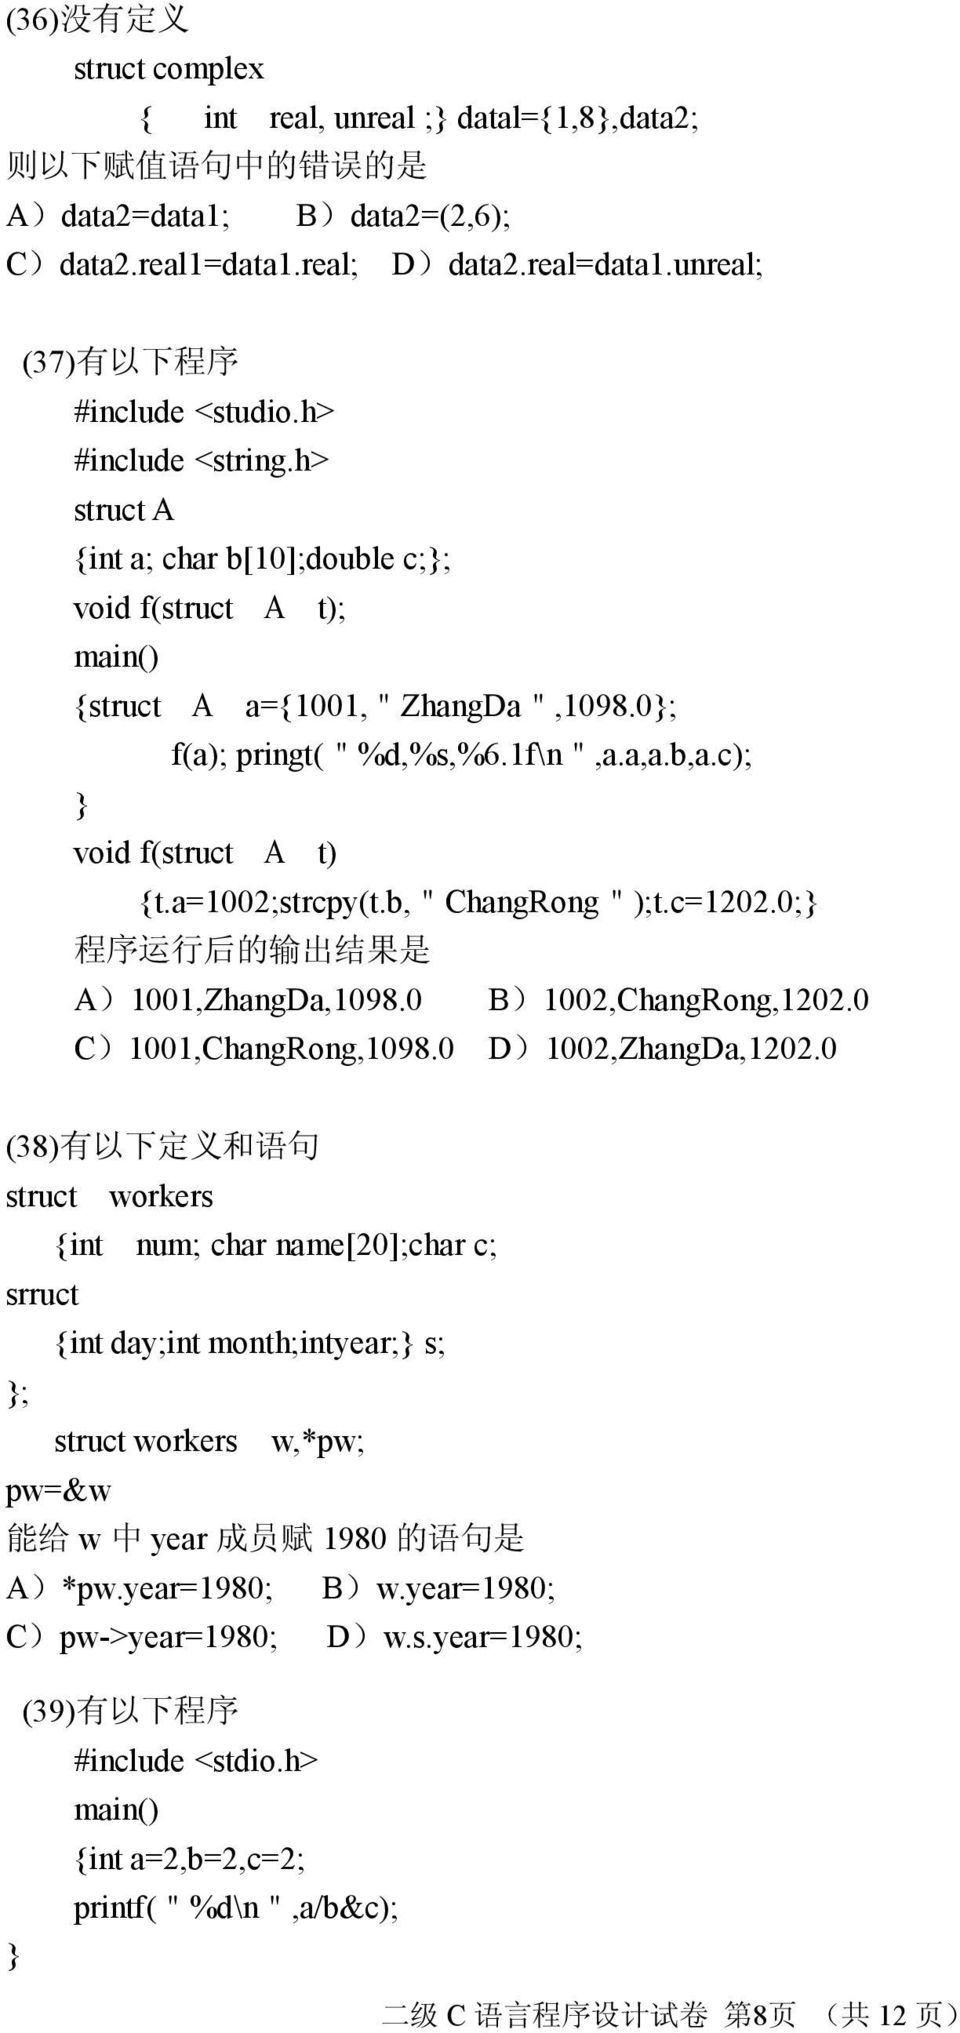 c); void f(struct A t) t.a=1002;strcpy(t.b,"changrong");t.c=1202.0; A)1001,ZhangDa,1098.0 B)1002,ChangRong,1202.0 C)1001,ChangRong,1098.0 D)1002,ZhangDa,1202.